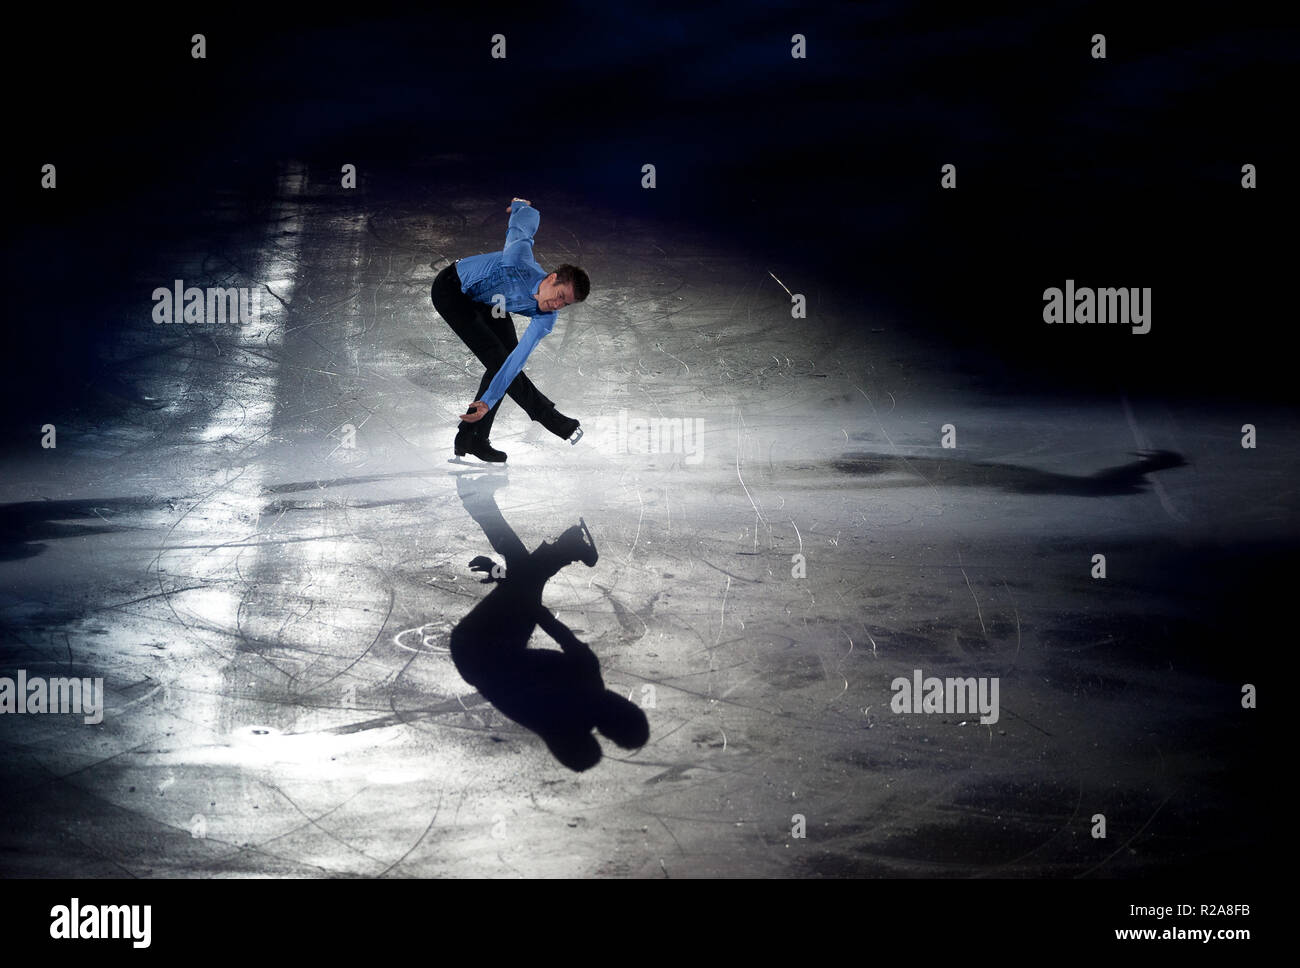 La patineuse artistique canadienne Jeffrey Buttle, vu l'exécution sur la glace pendant le spectacle. Révolution sur Ice tour show est un spectacle de patinage artistique sur glace avec une distribution internationale du champion du monde patineurs, dirigé par le patineur espagnol Javier Fernández. Le salon propose également des spectacles musicaux et d'acrobatie. Banque D'Images